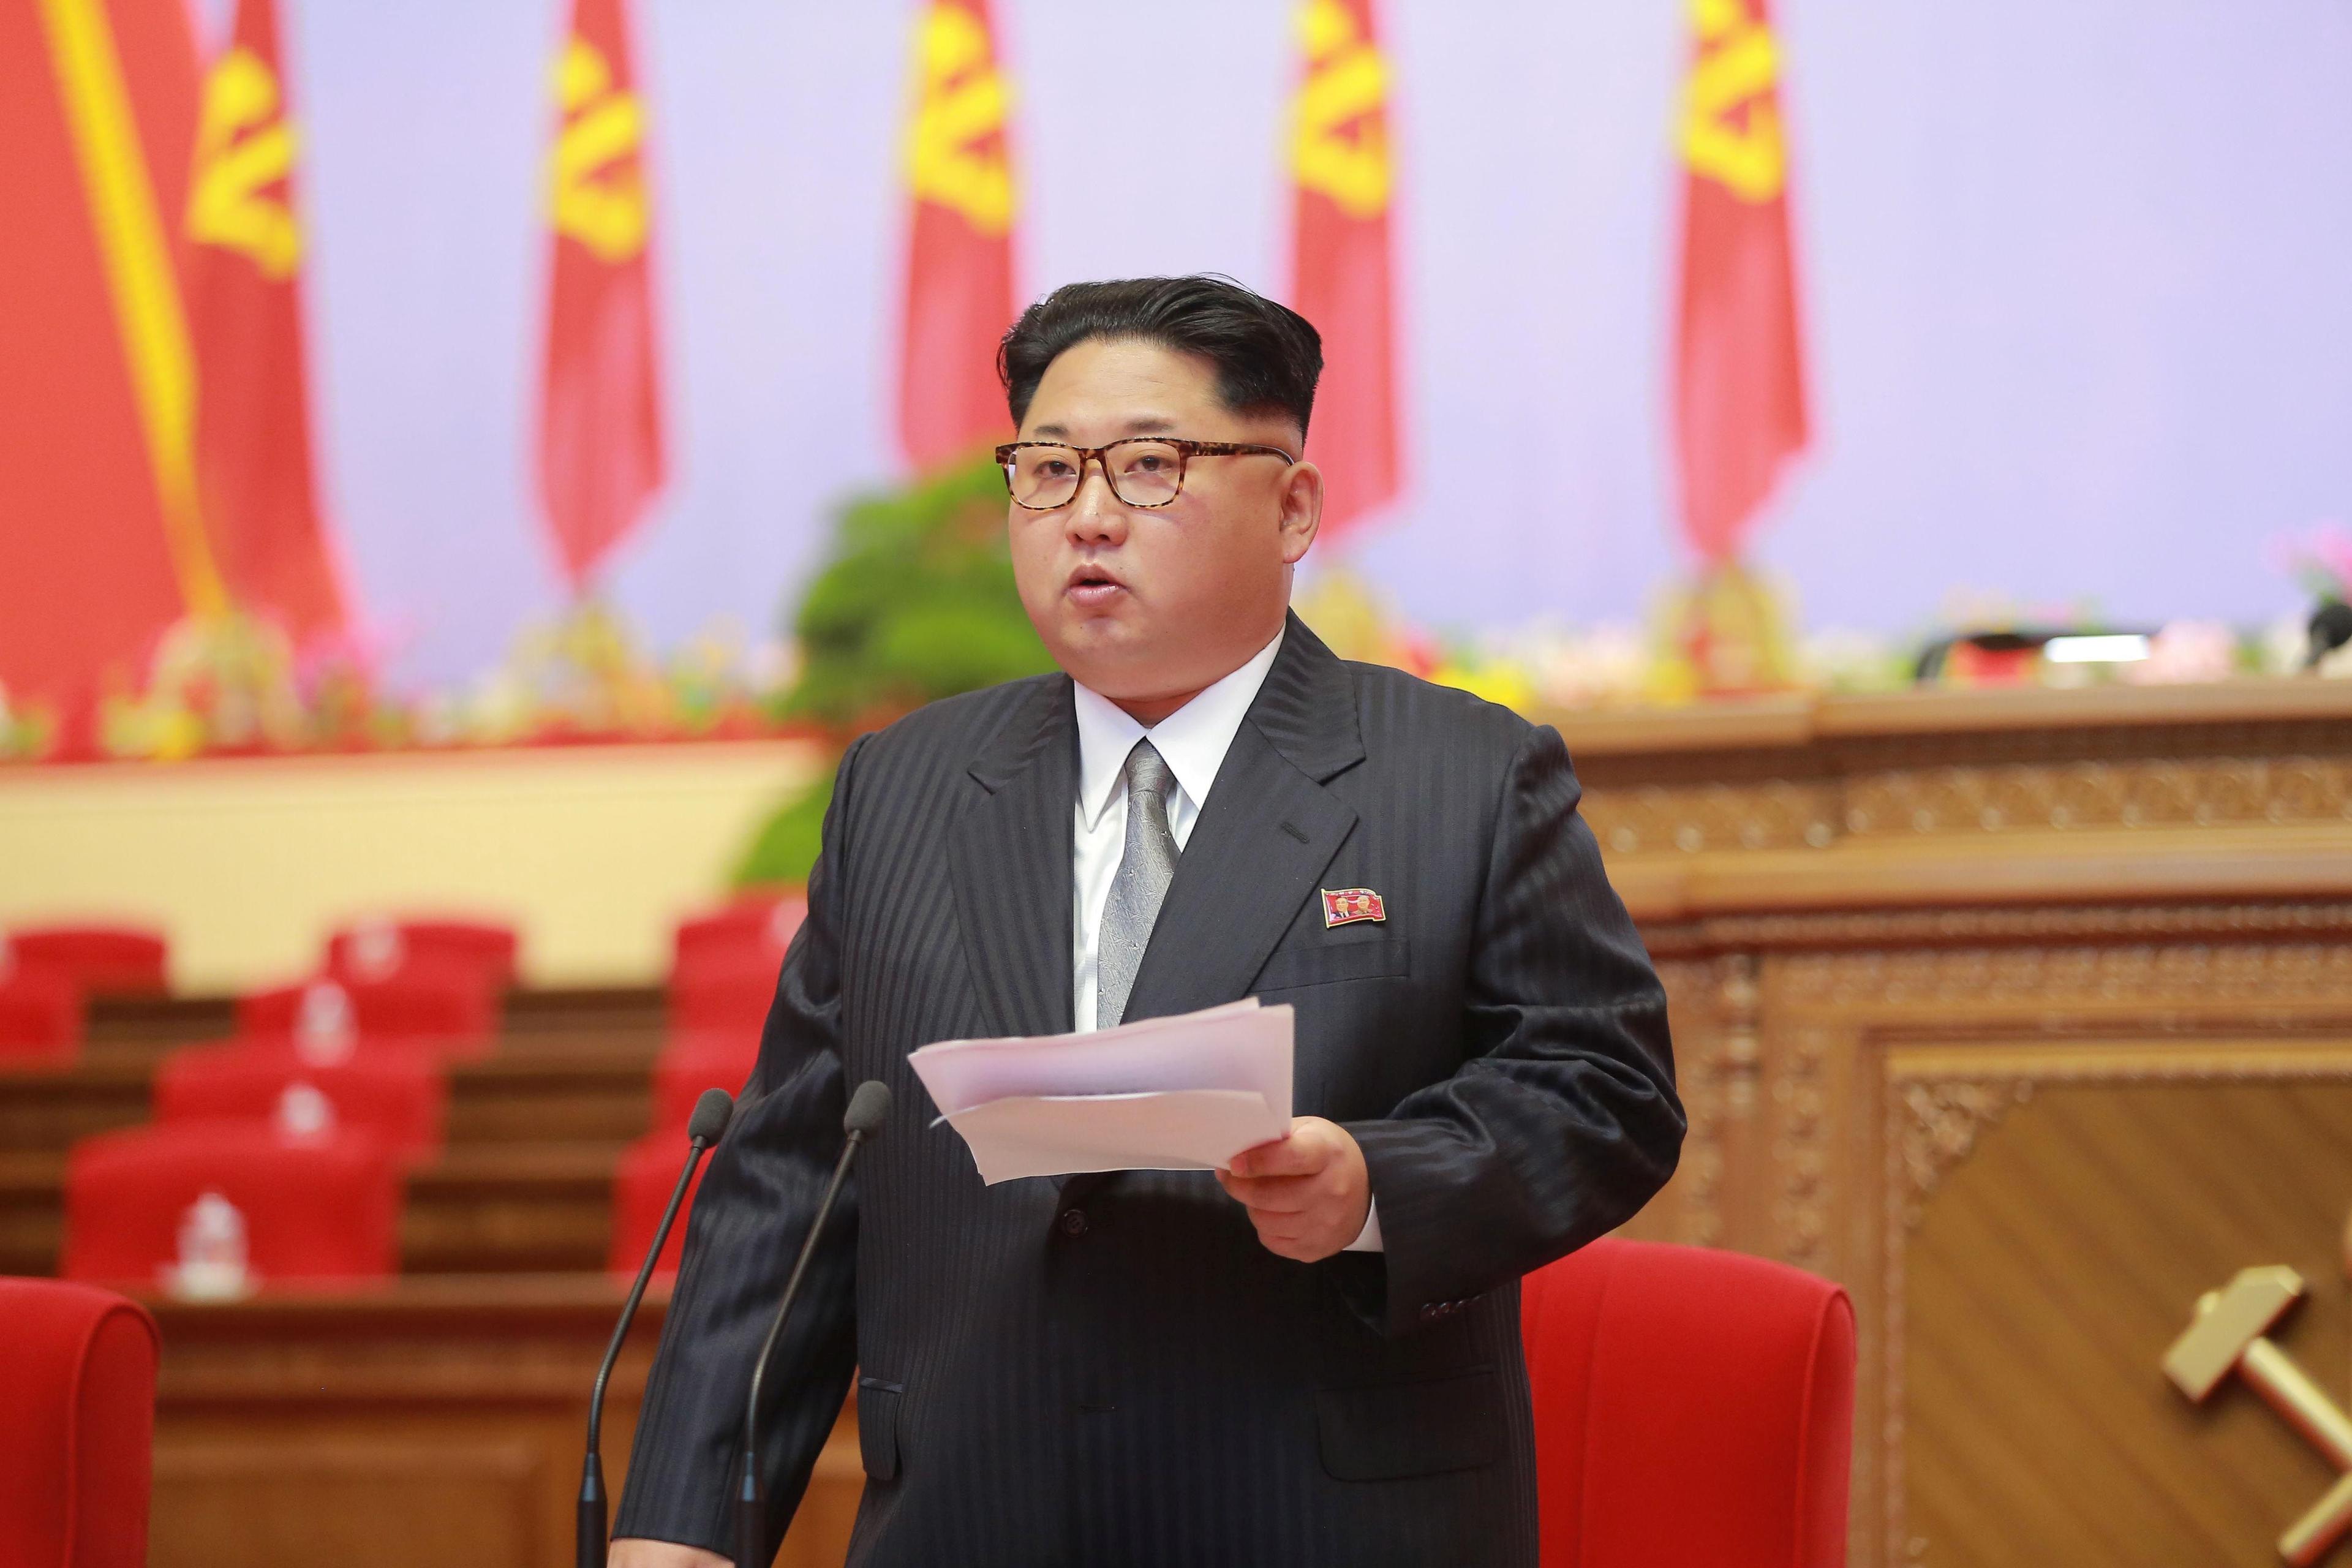 Kim hoće da cijeli poluotok stavi pod svoj režim